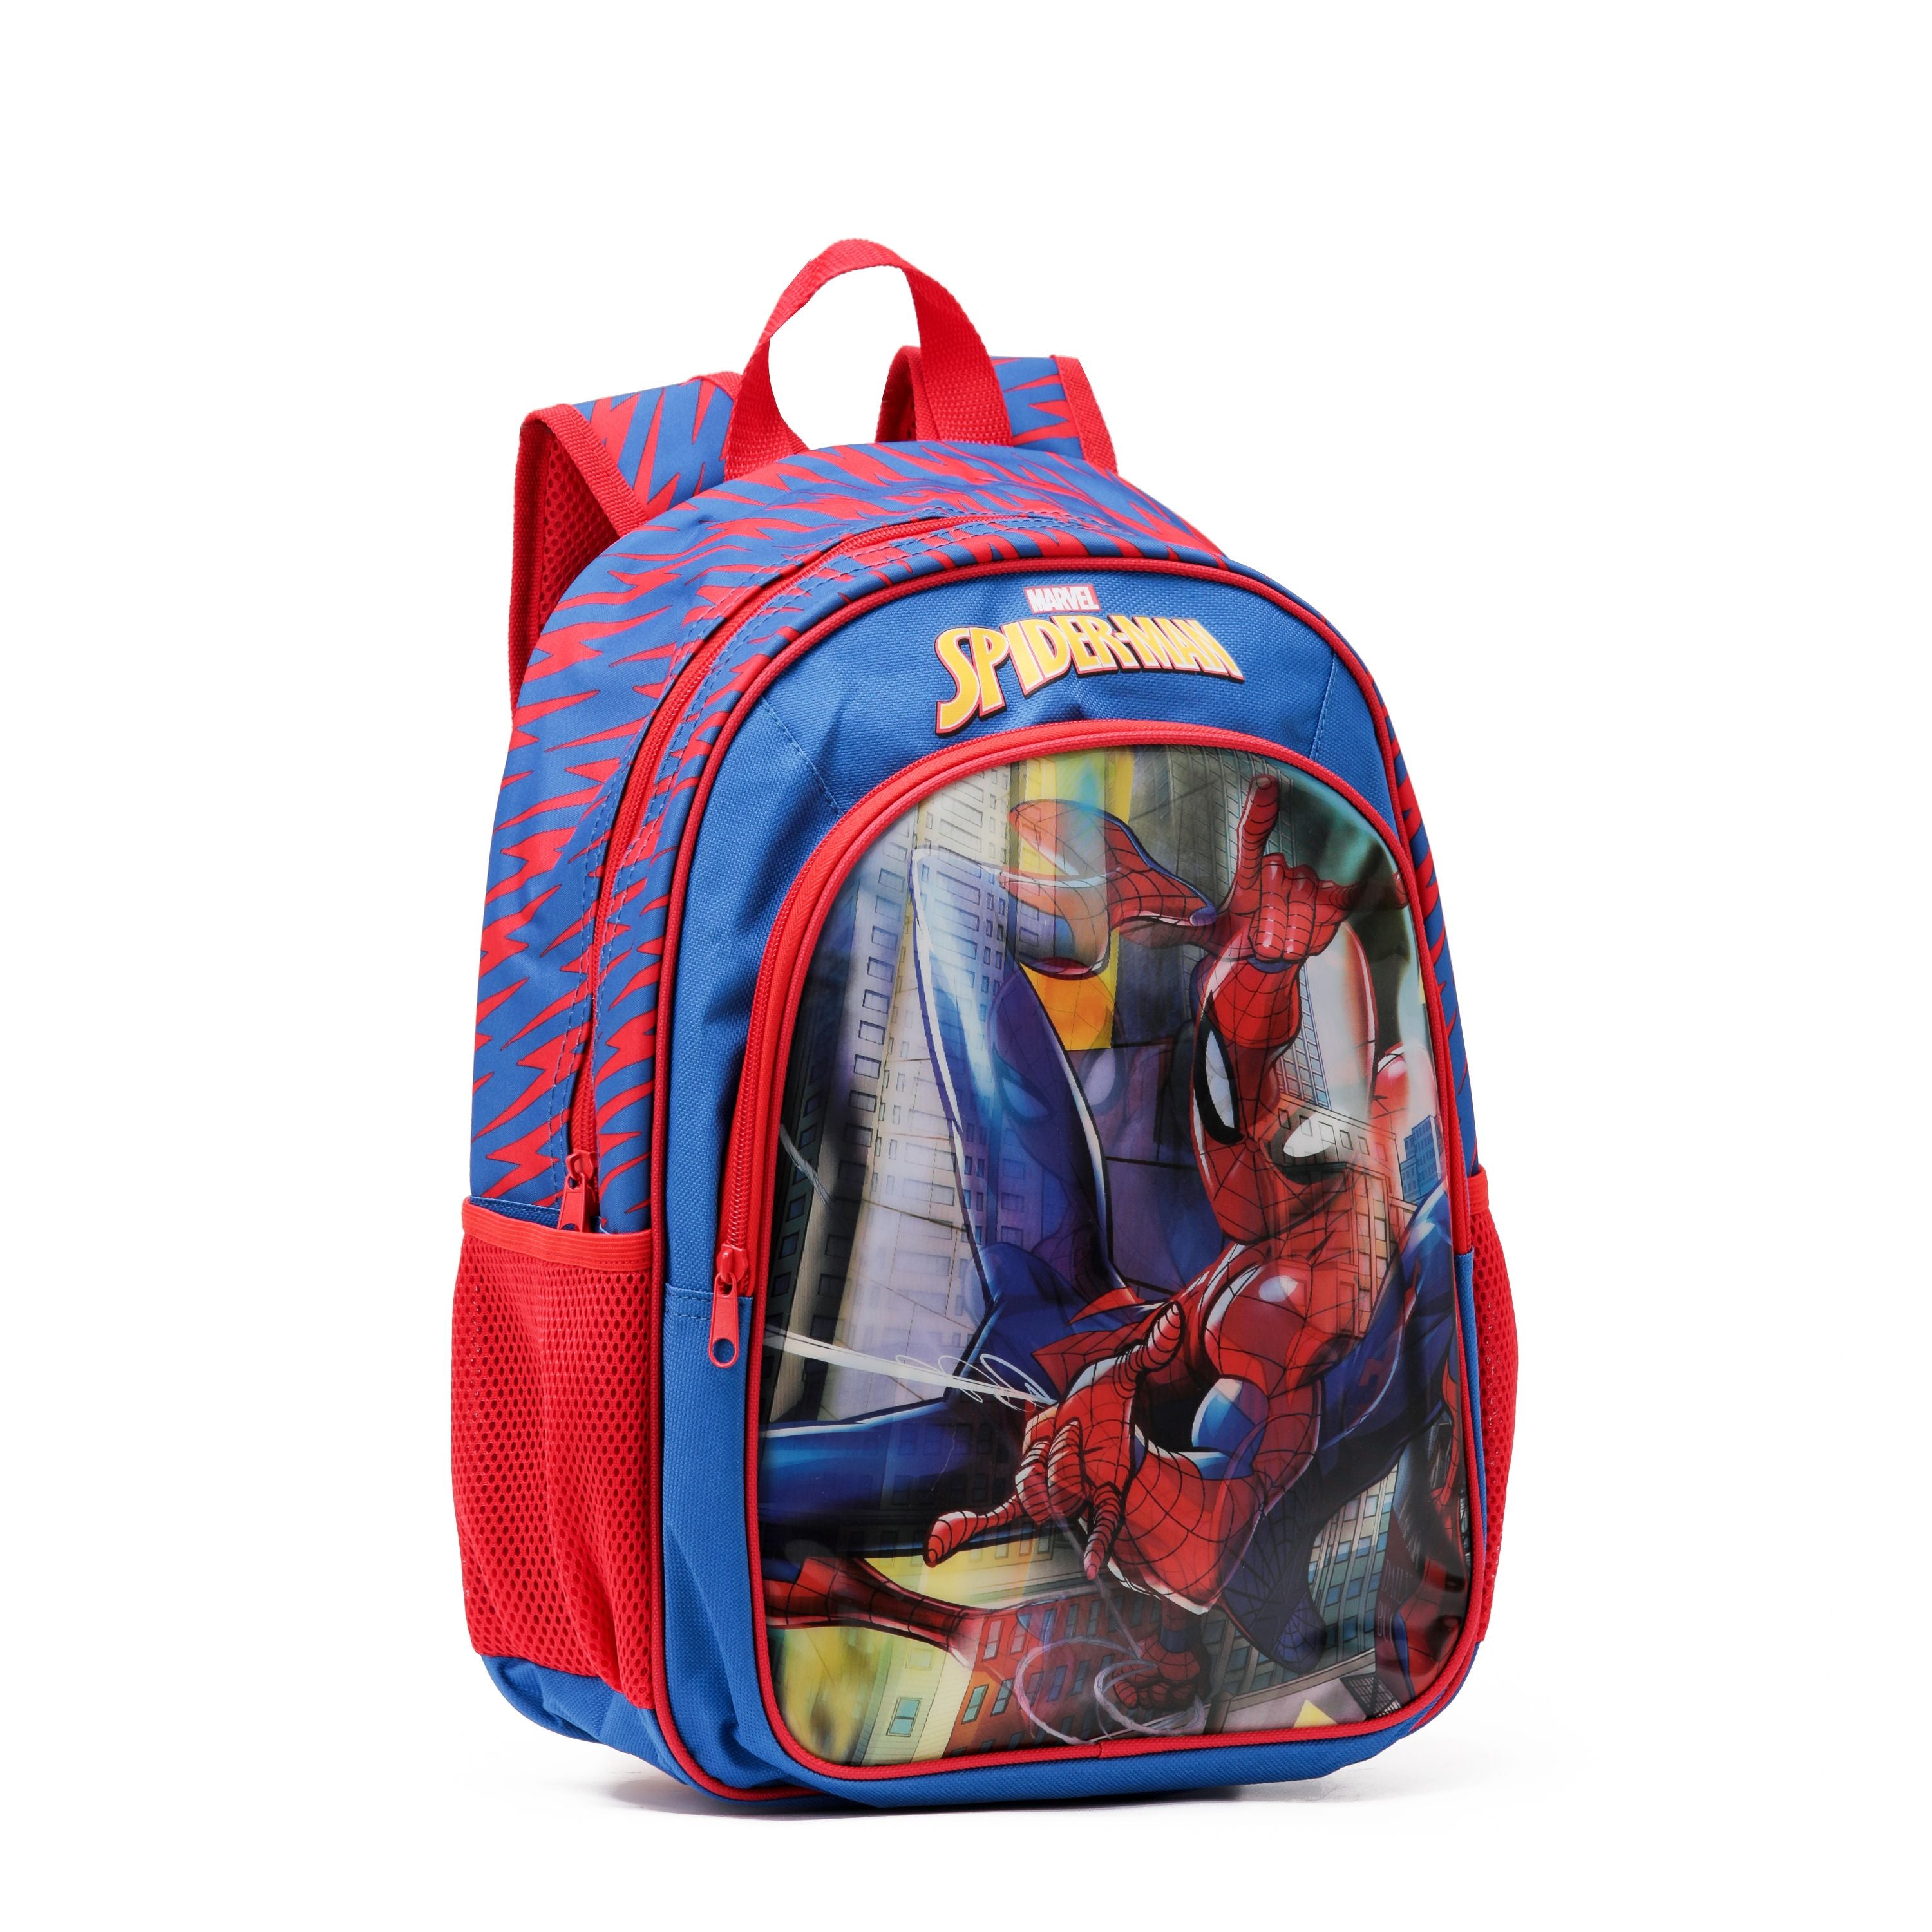 Marvel - Spider Man Mar093 15in Hologram Backpack - Red/Blue - 0